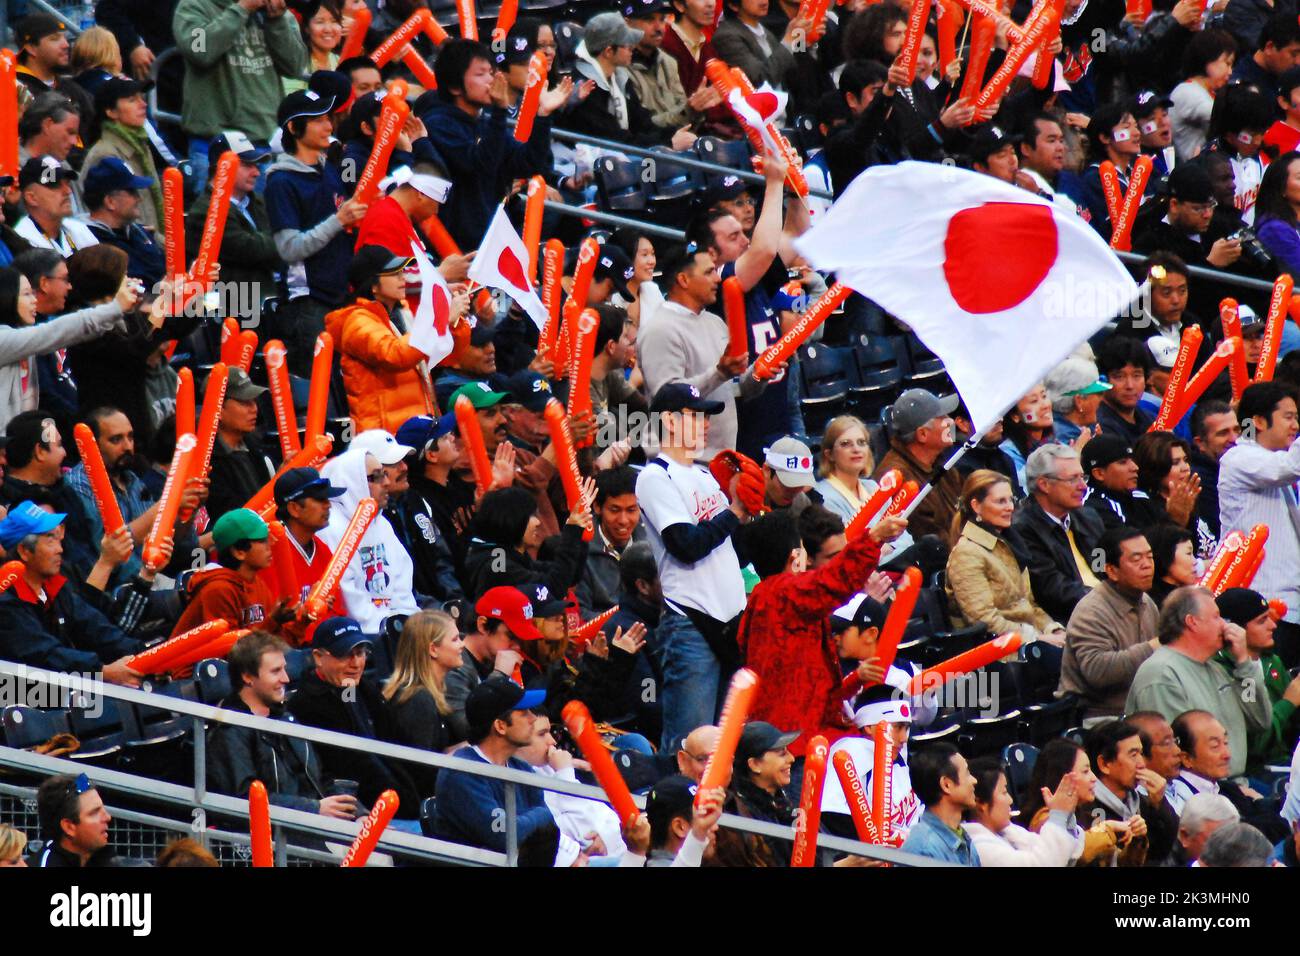 Les fans de l'équipe nationale japonaise de baseball montrent leur fierté en agitant le drapeau du Japon lors d'un match international Banque D'Images